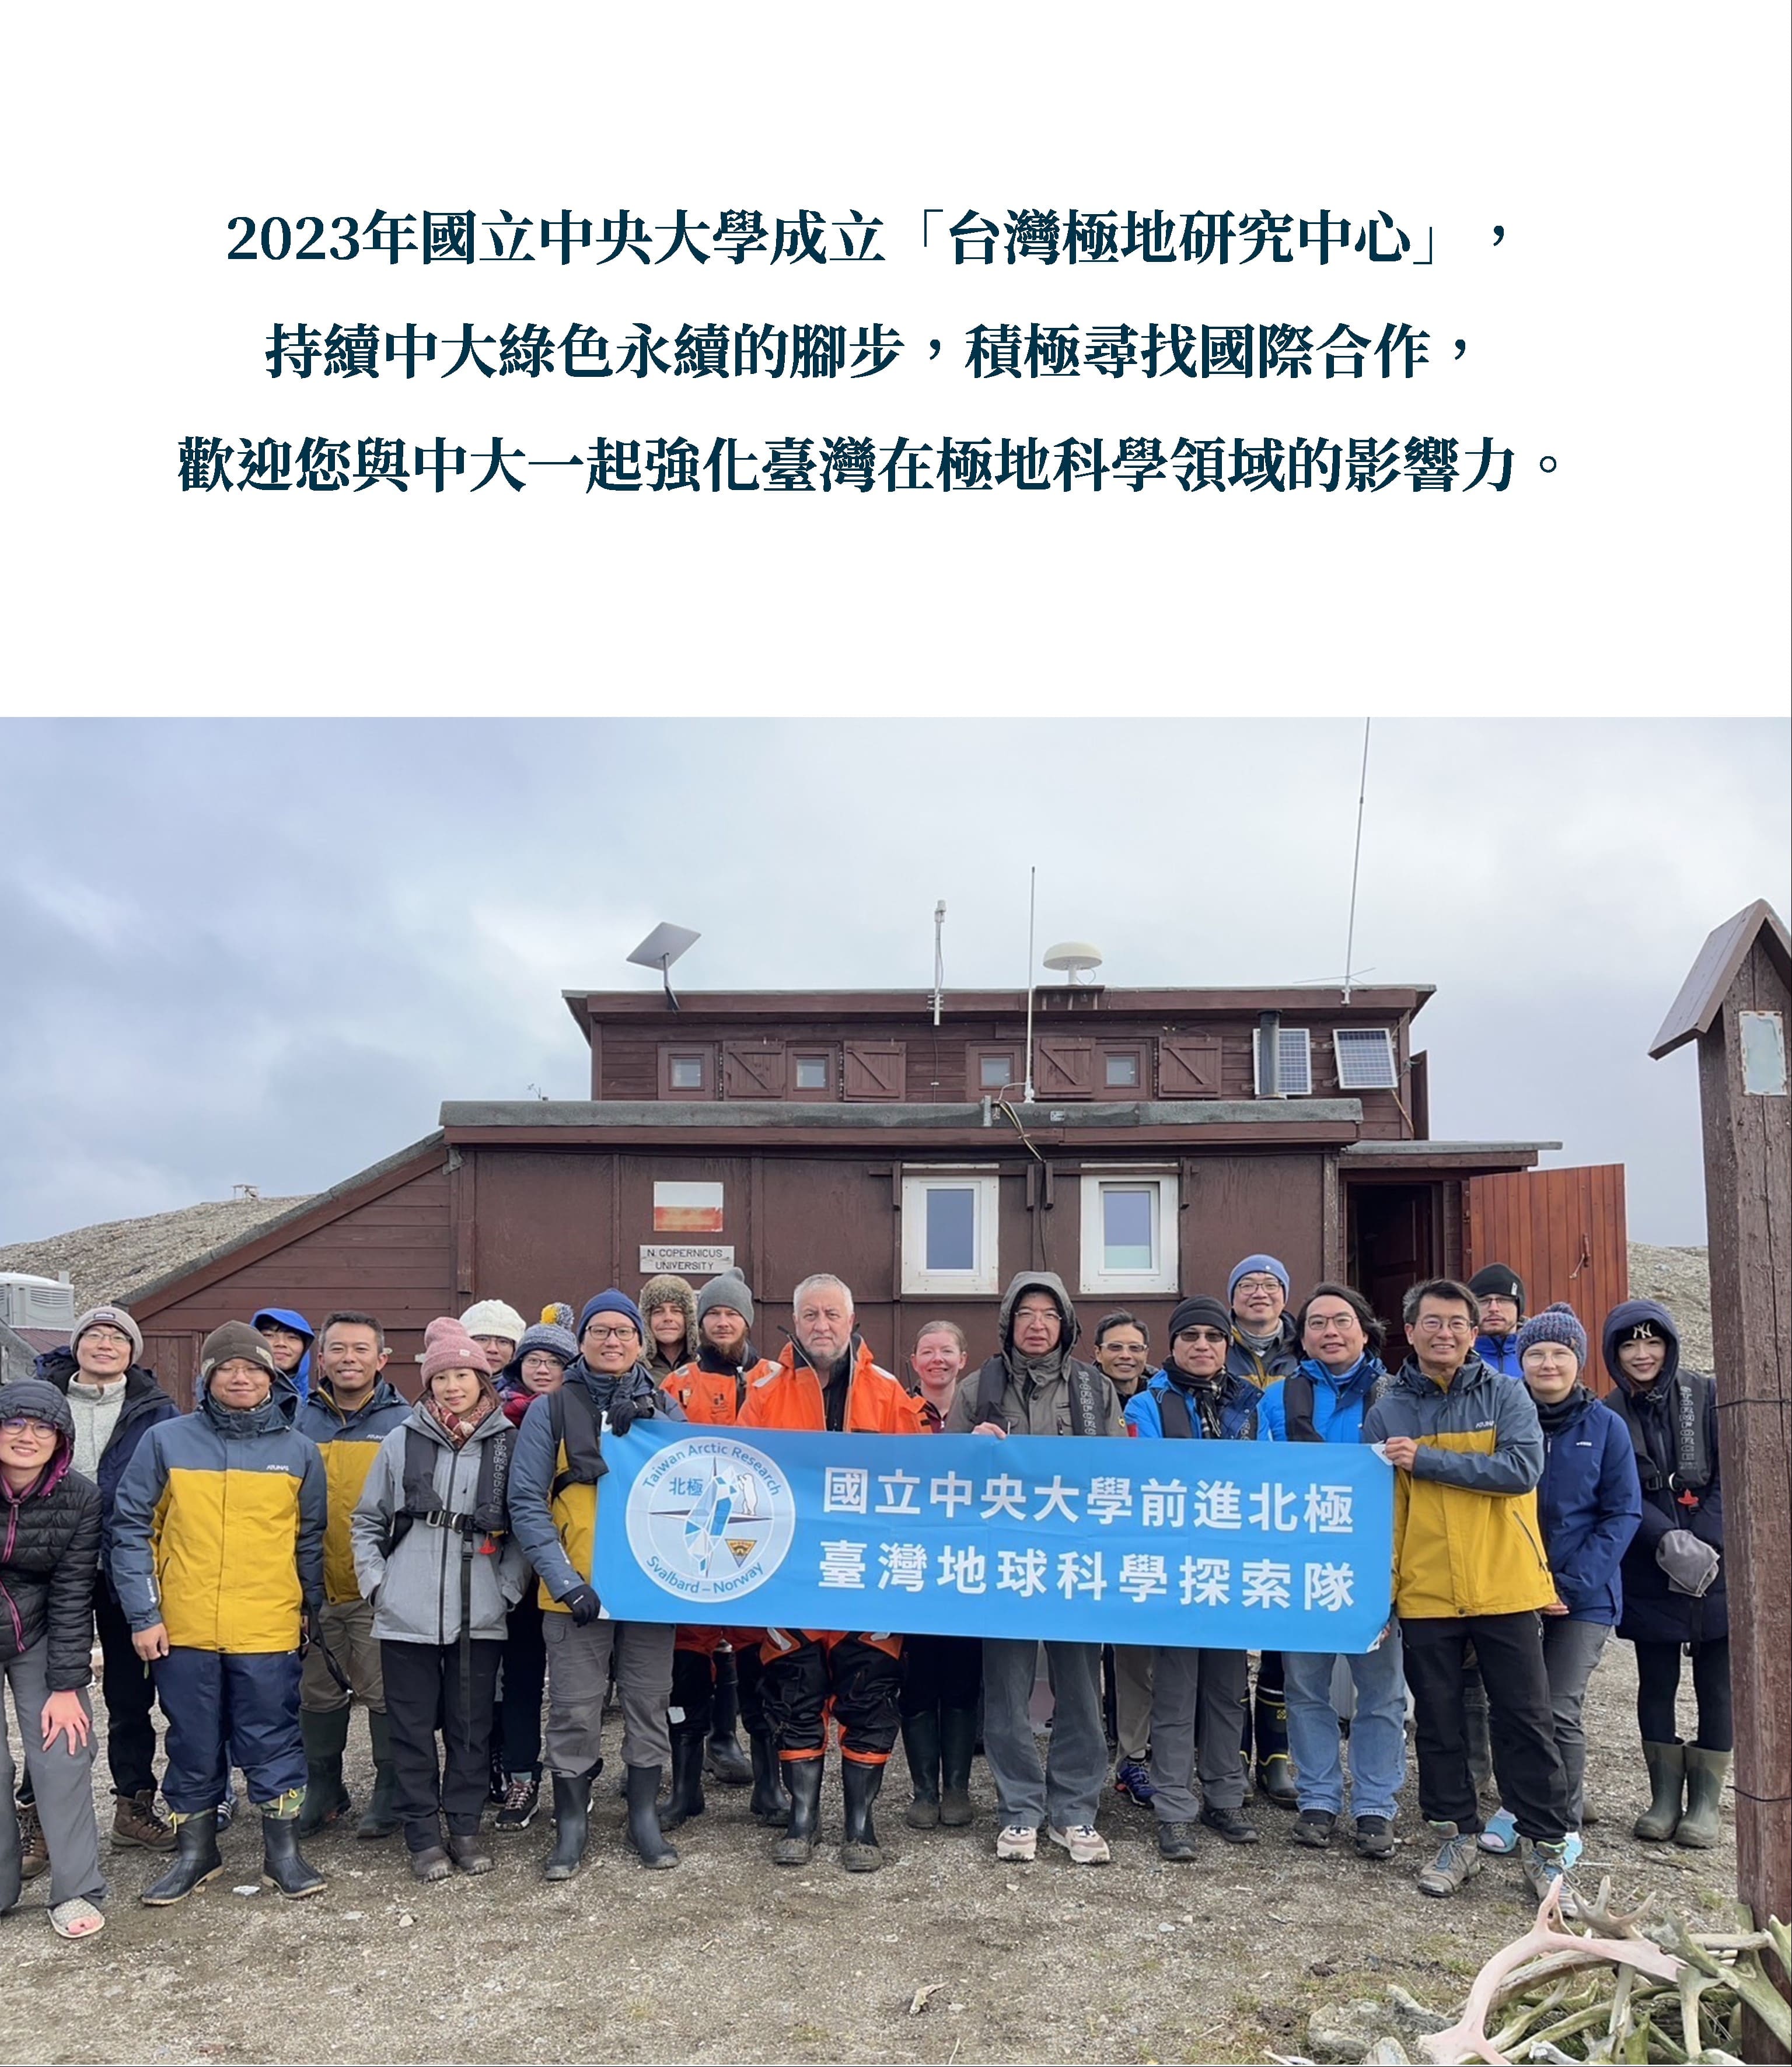 2023年國立中央大學成立「台灣極地研究中心」，積極尋找國際合作，歡迎您與中大同行，一起強化臺灣在極地科學領域的影響力。